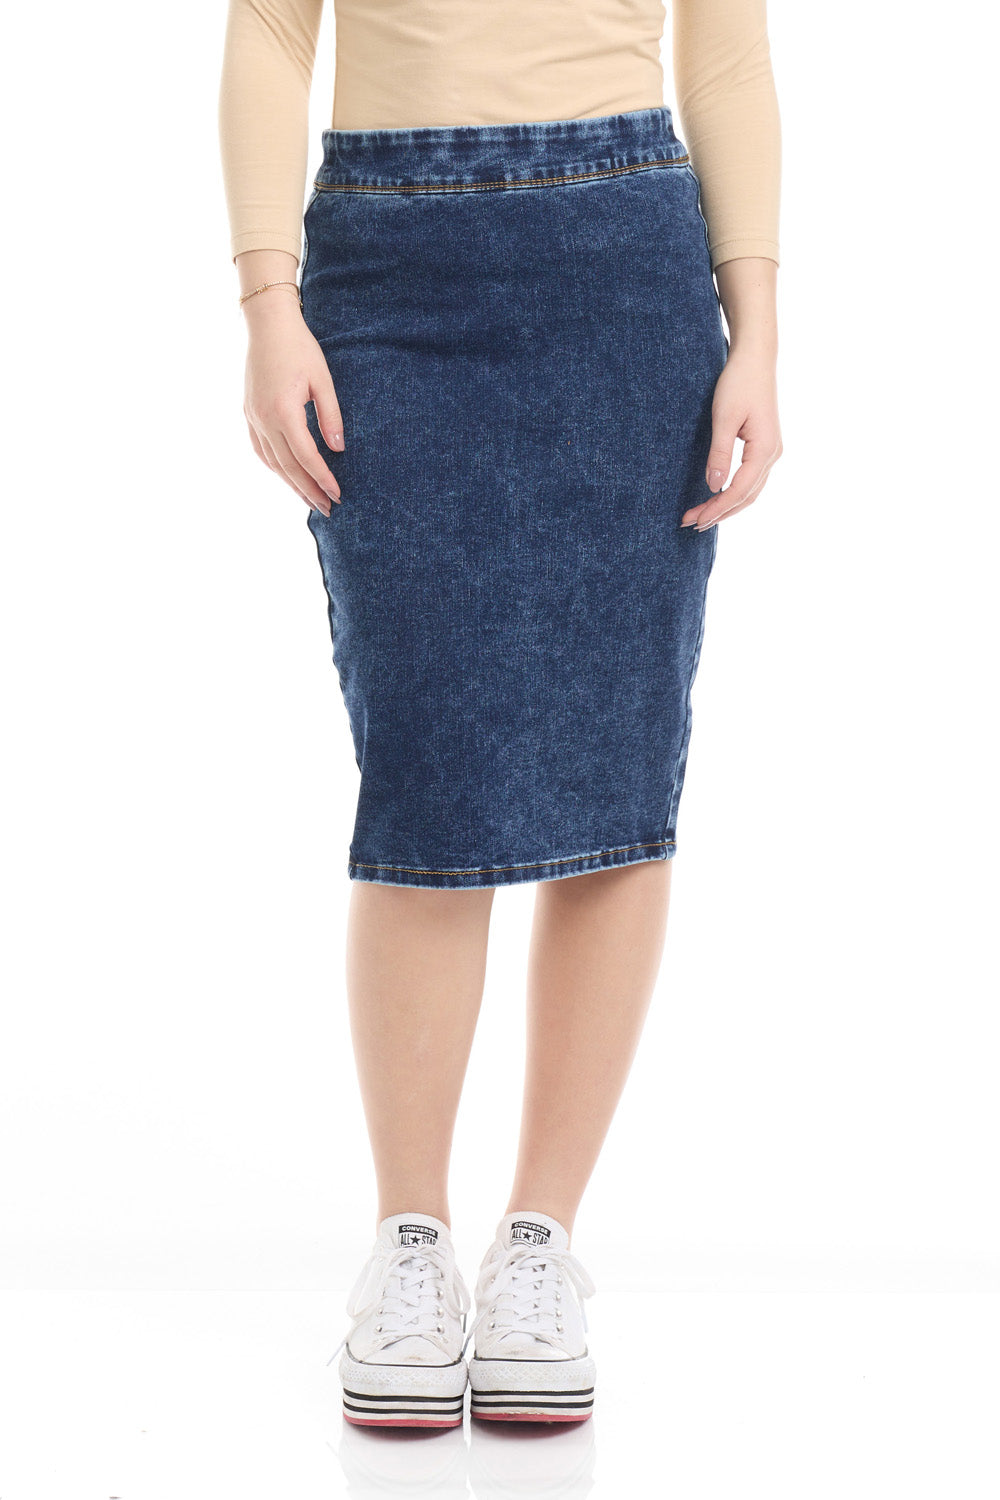 Modest Jean Pencil Skirt for Women 'Venice' EX802262